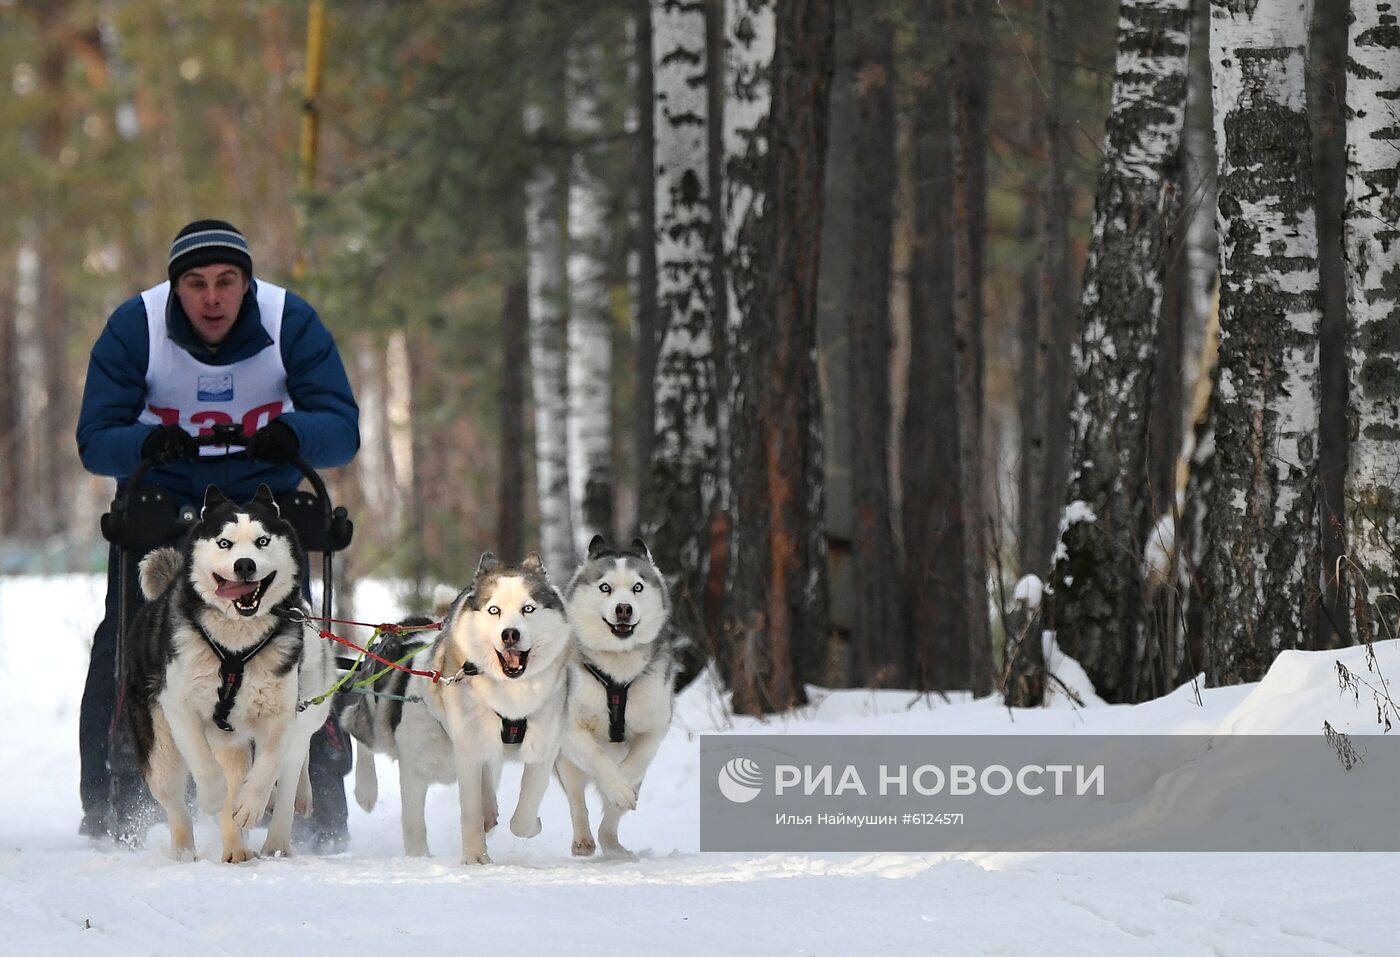 Соревнования по ездовому спорту "Гонка Снеговиков 2020" в Красноярском крае